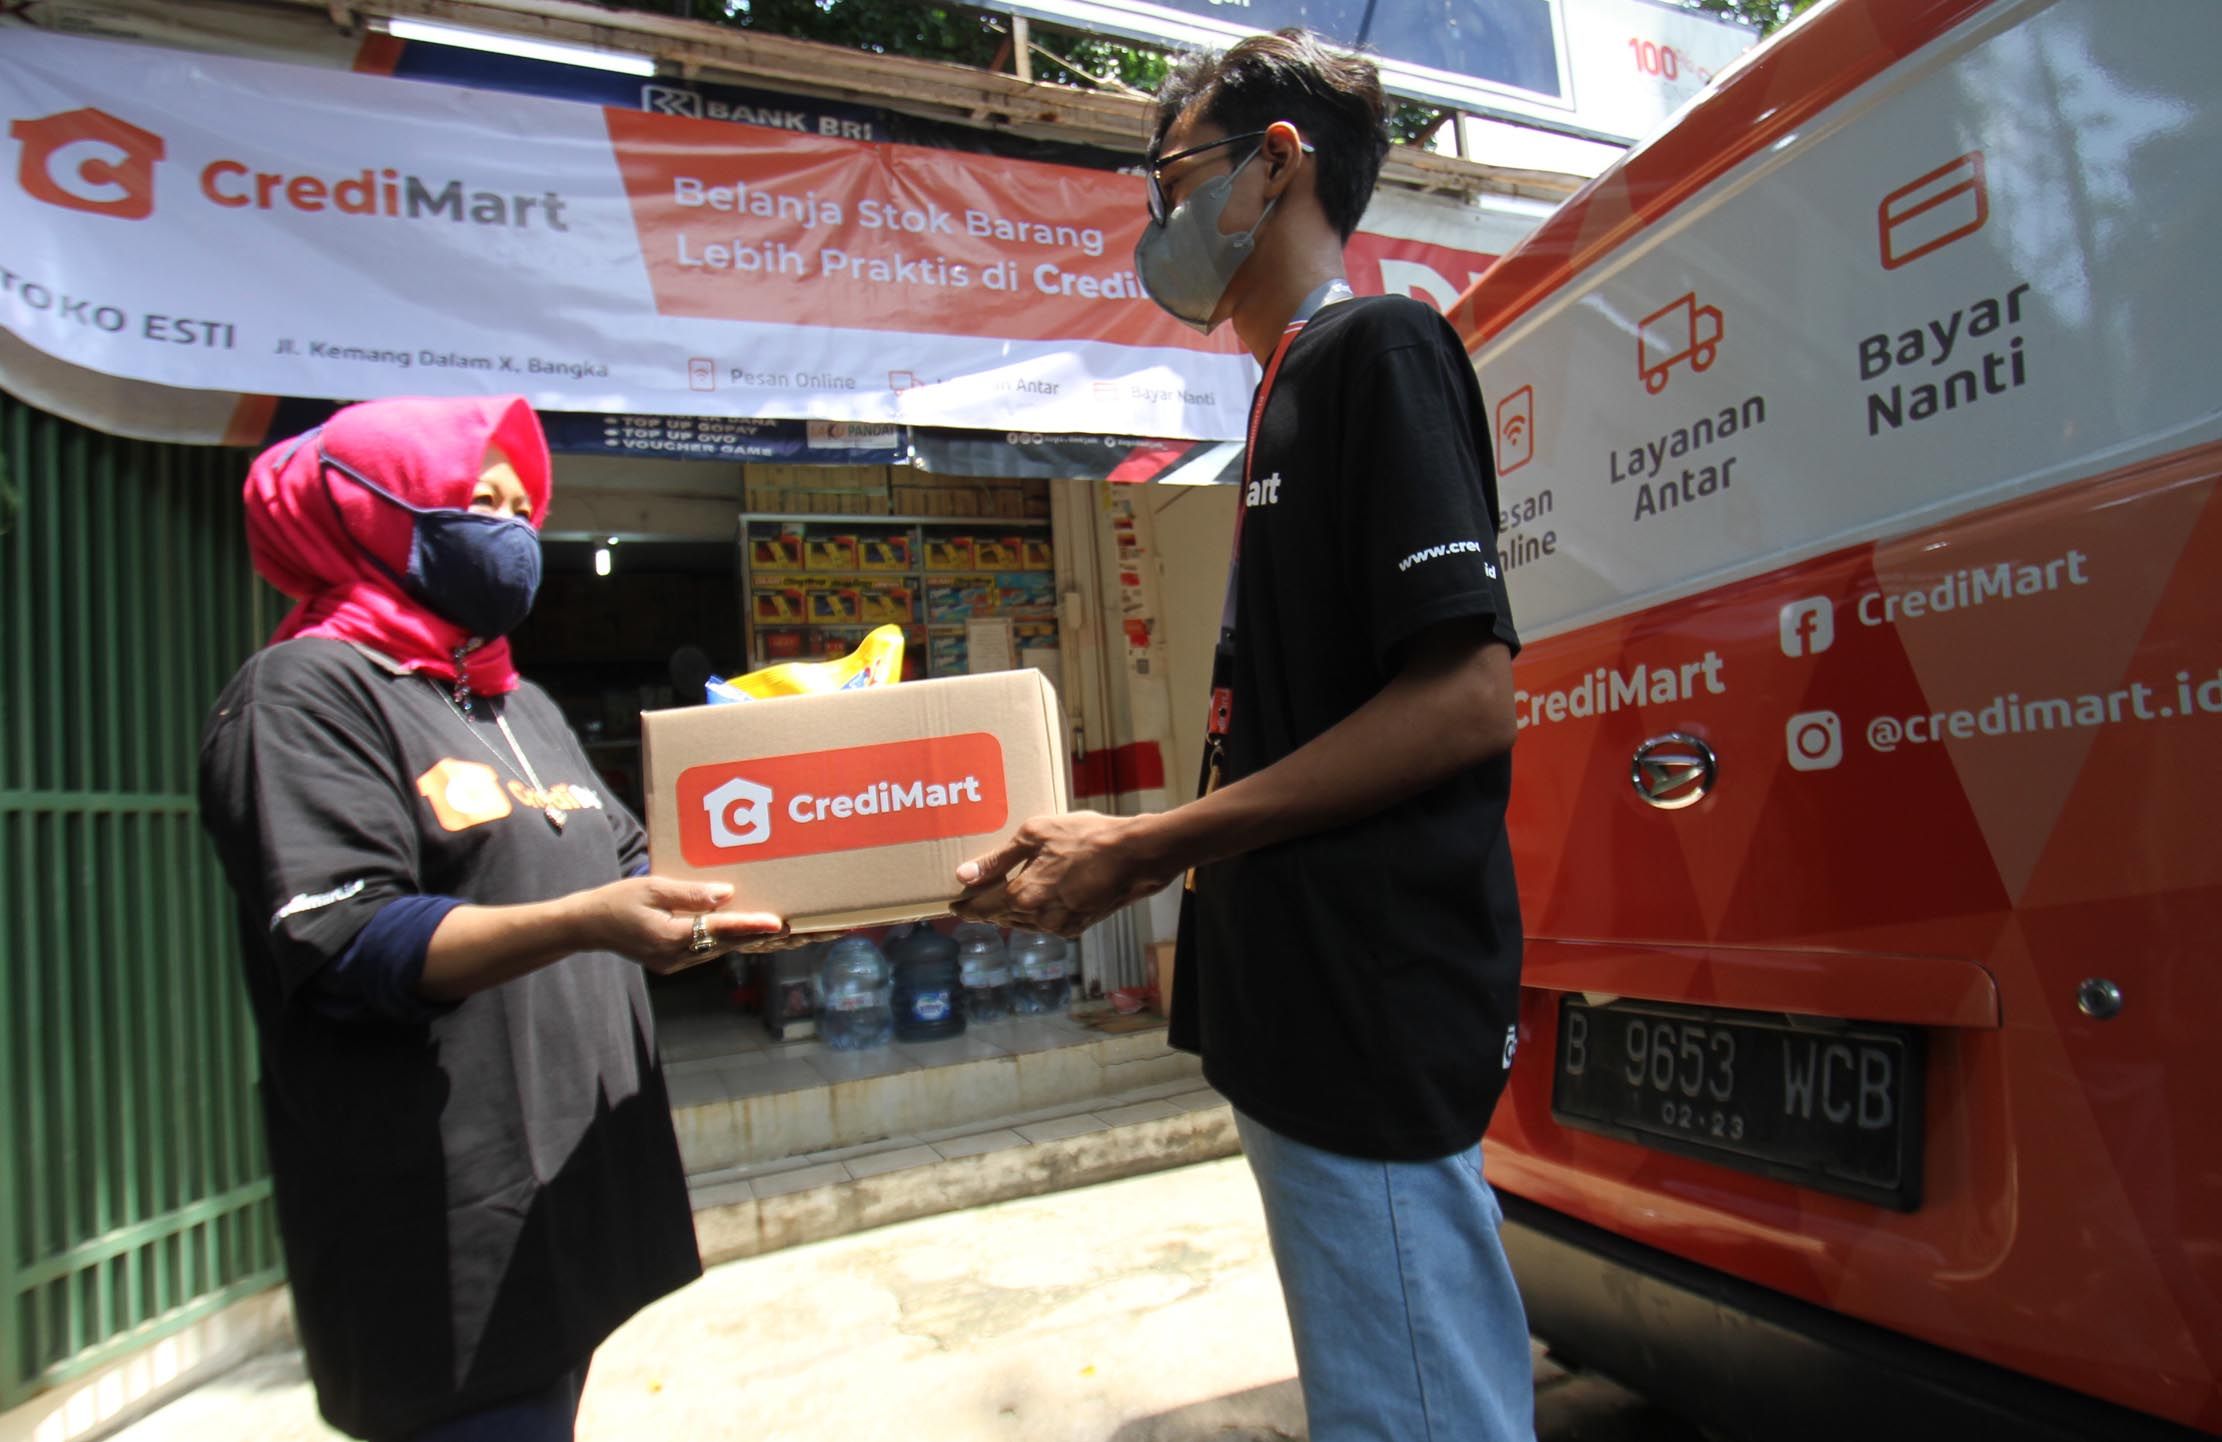 Toko grosir online berbasis web CrediMart mengantarkan pesanan kulakan Toko Esti di Kemang, Jakarta Selatan sebagai simbolis peluncuran resmi CrediMart oleh CrediBook ,Rabu 1 September 2021. Foto : Panji Asmoro/TrenAsia